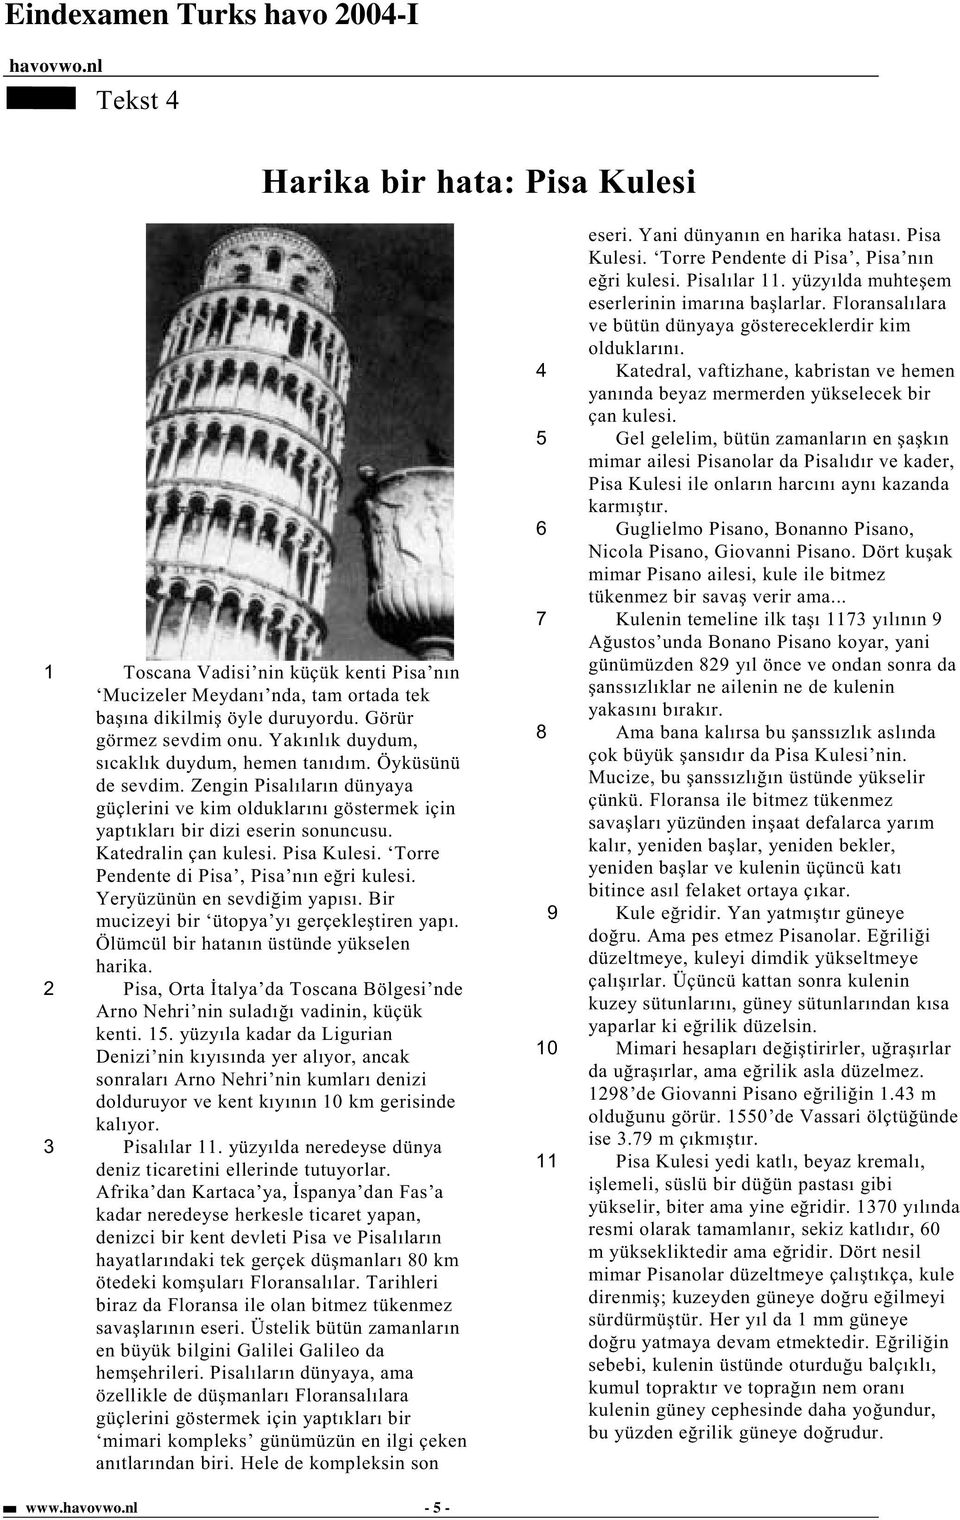 Pisa Kulesi. Torre Pendente di Pisa, Pisa nın e ri kulesi. Yeryüzünün en sevdi im yapısı. Bir mucizeyi bir ütopya yı gerçekle tiren yapı. Ölümcül bir hatanın üstünde yükselen harika.